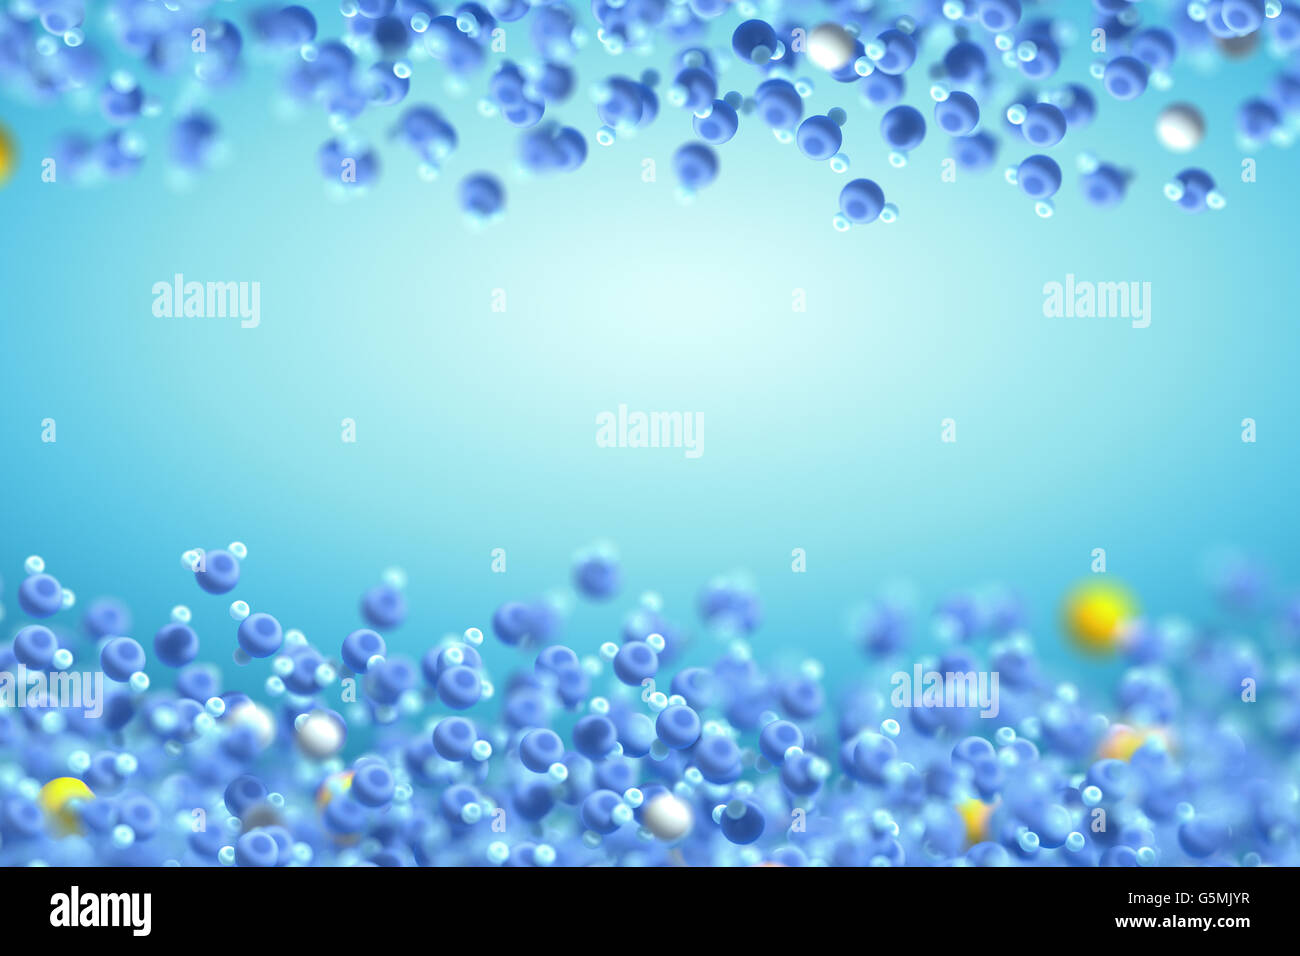 Wasser (in blau) ist eine chemische Verbindung mit Sauerstoff und Wasserstoff Atome. Andere Verbindungen (in gelb) sind Salze und Mineralien Stockfoto